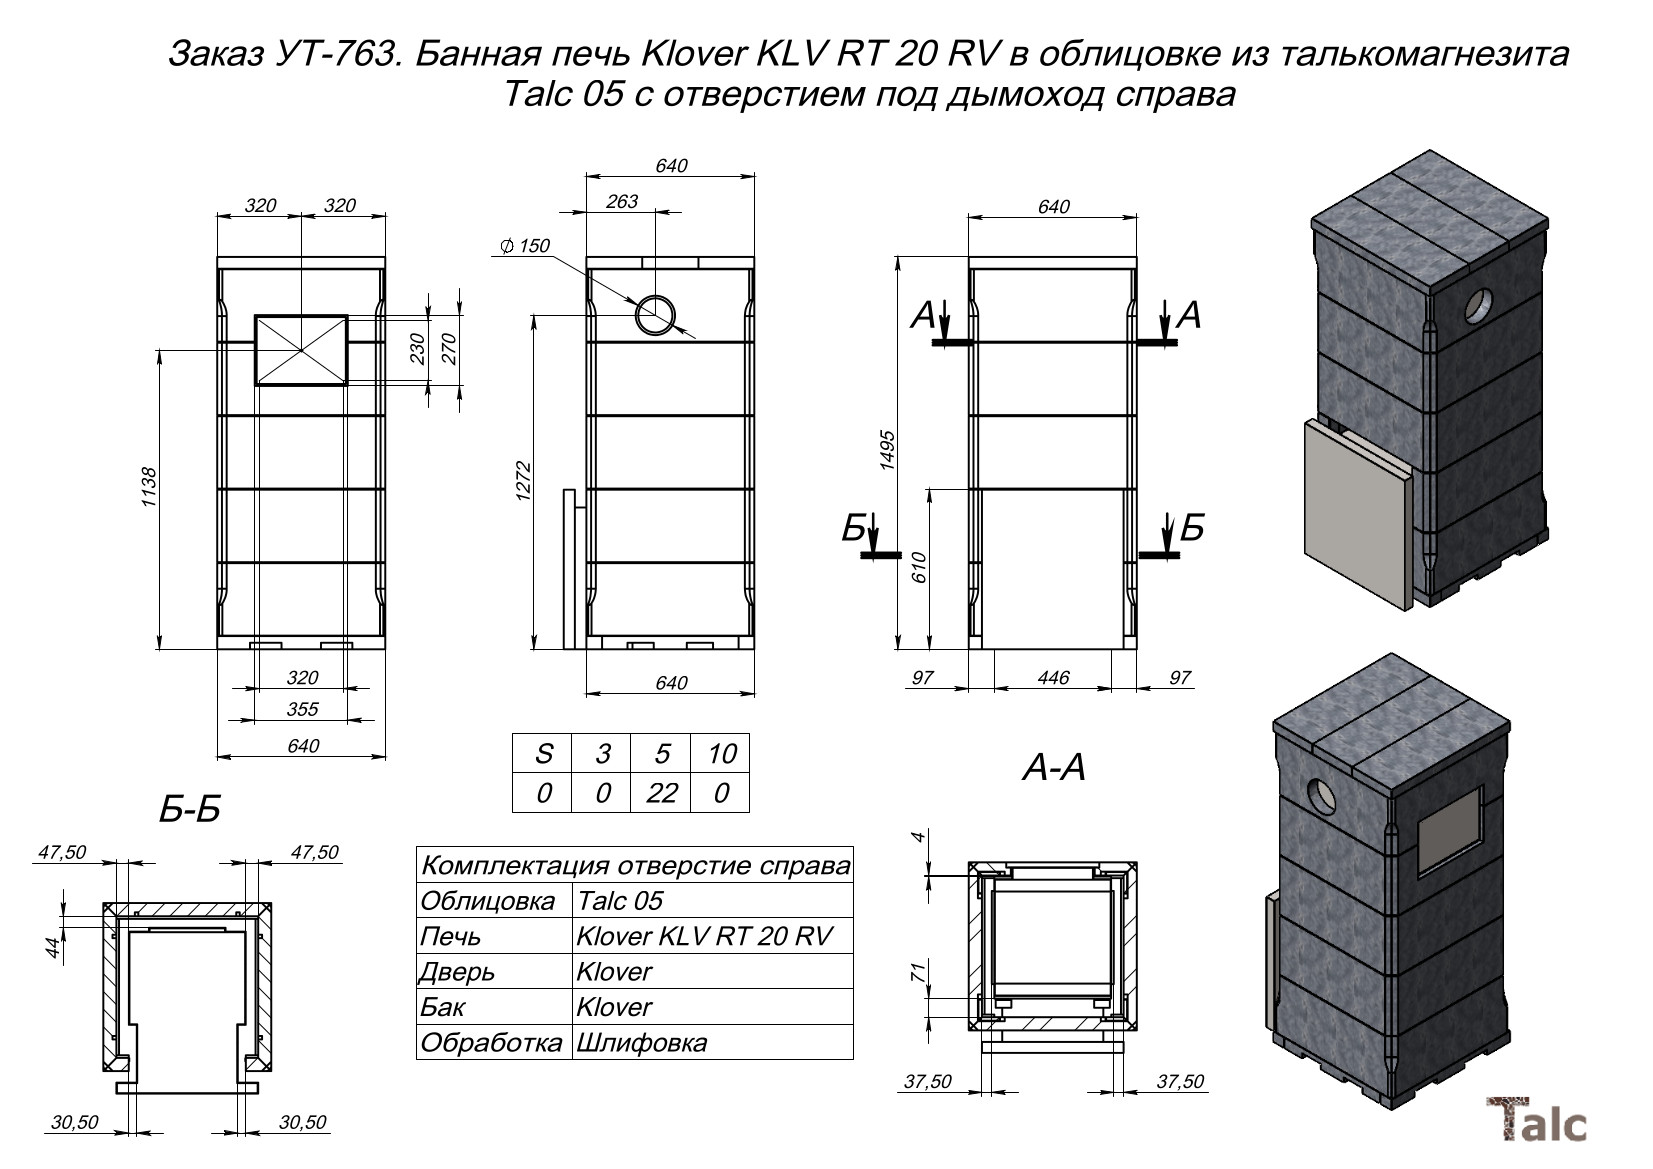 Банная печь Klover KLV RT 20RV в облицовке из талькомагнезита Talc 05 с отверстием для дымохода справа